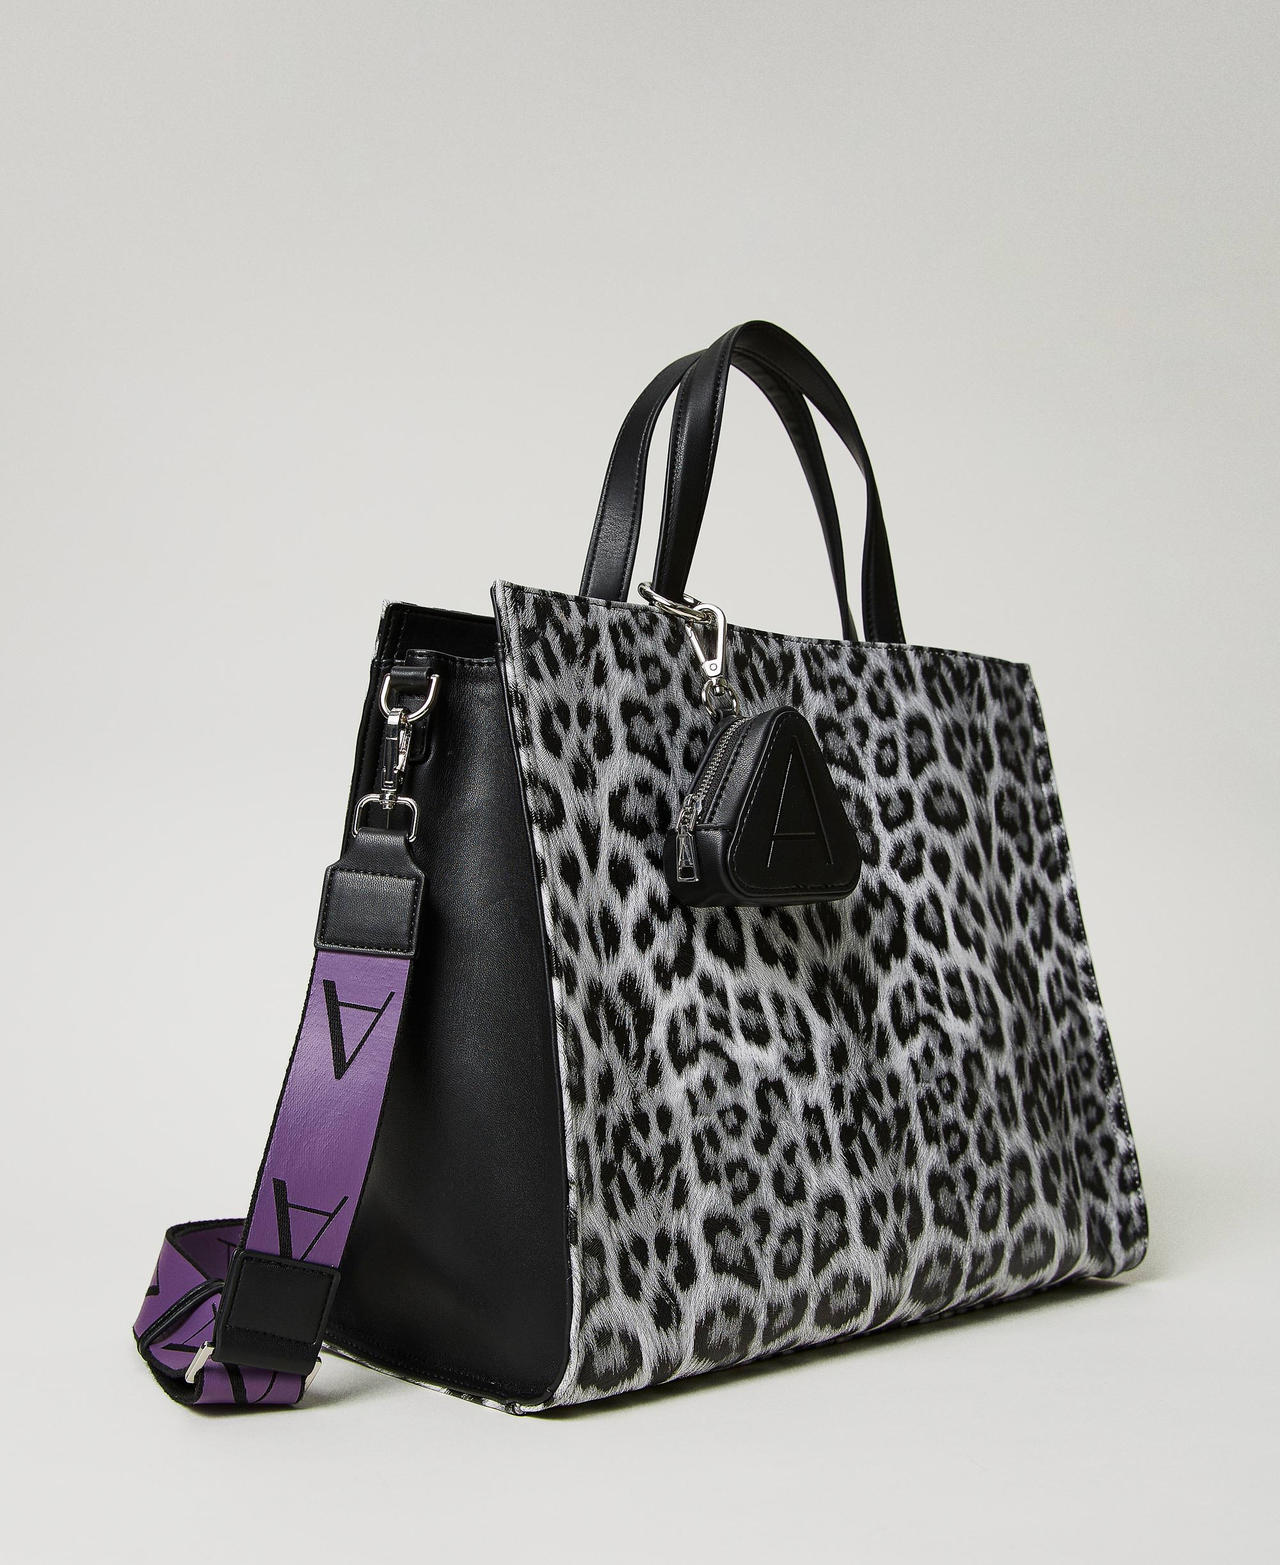 Borsa shopper con stampa animalier Stampa Leopard Black And White Donna 232AA7020-02